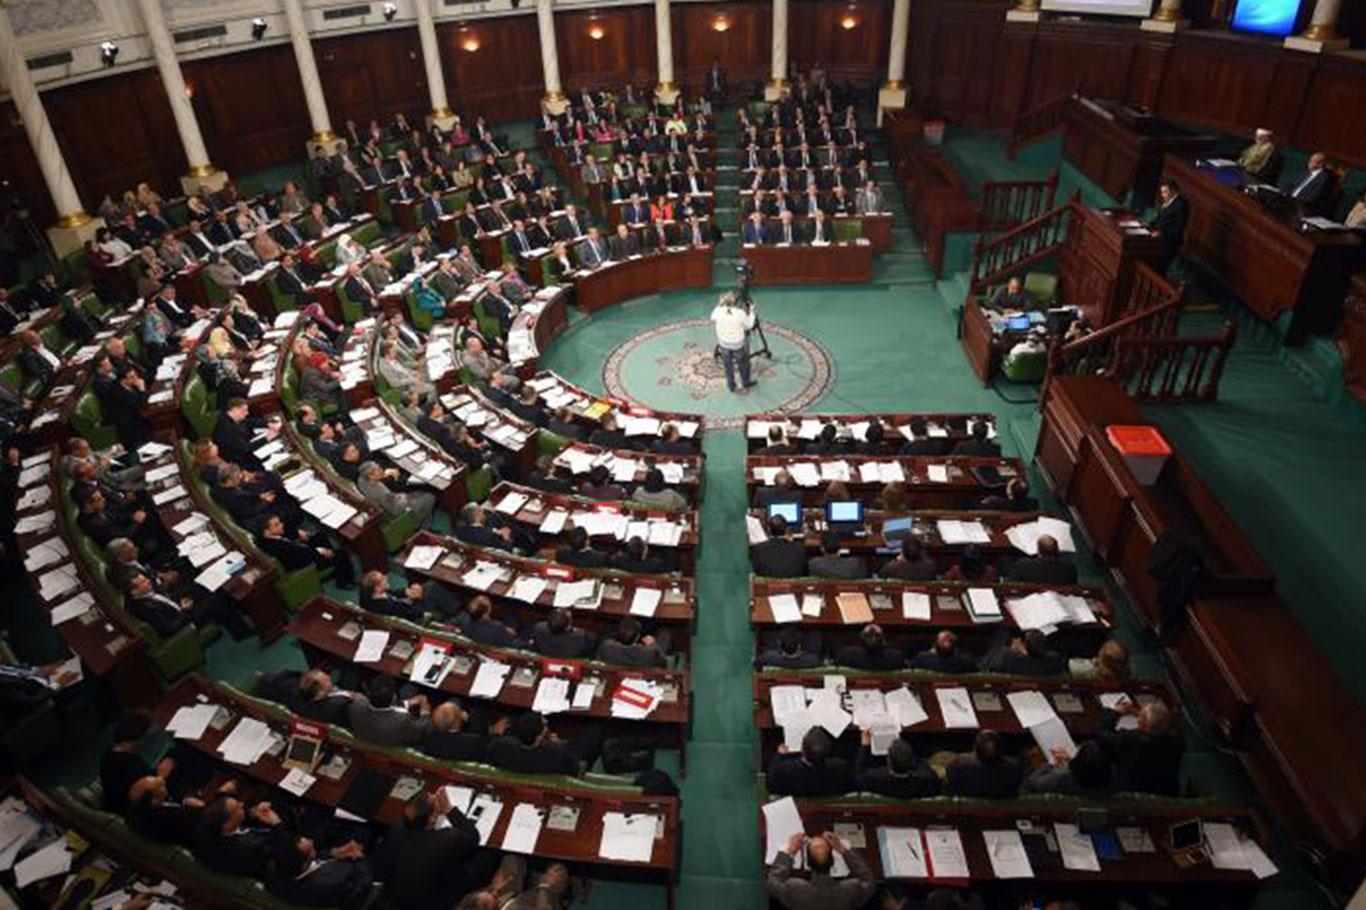 سلمان زكري: هناك تغييرات كبيرة حاصلة في المشهد البرلماني التونسي